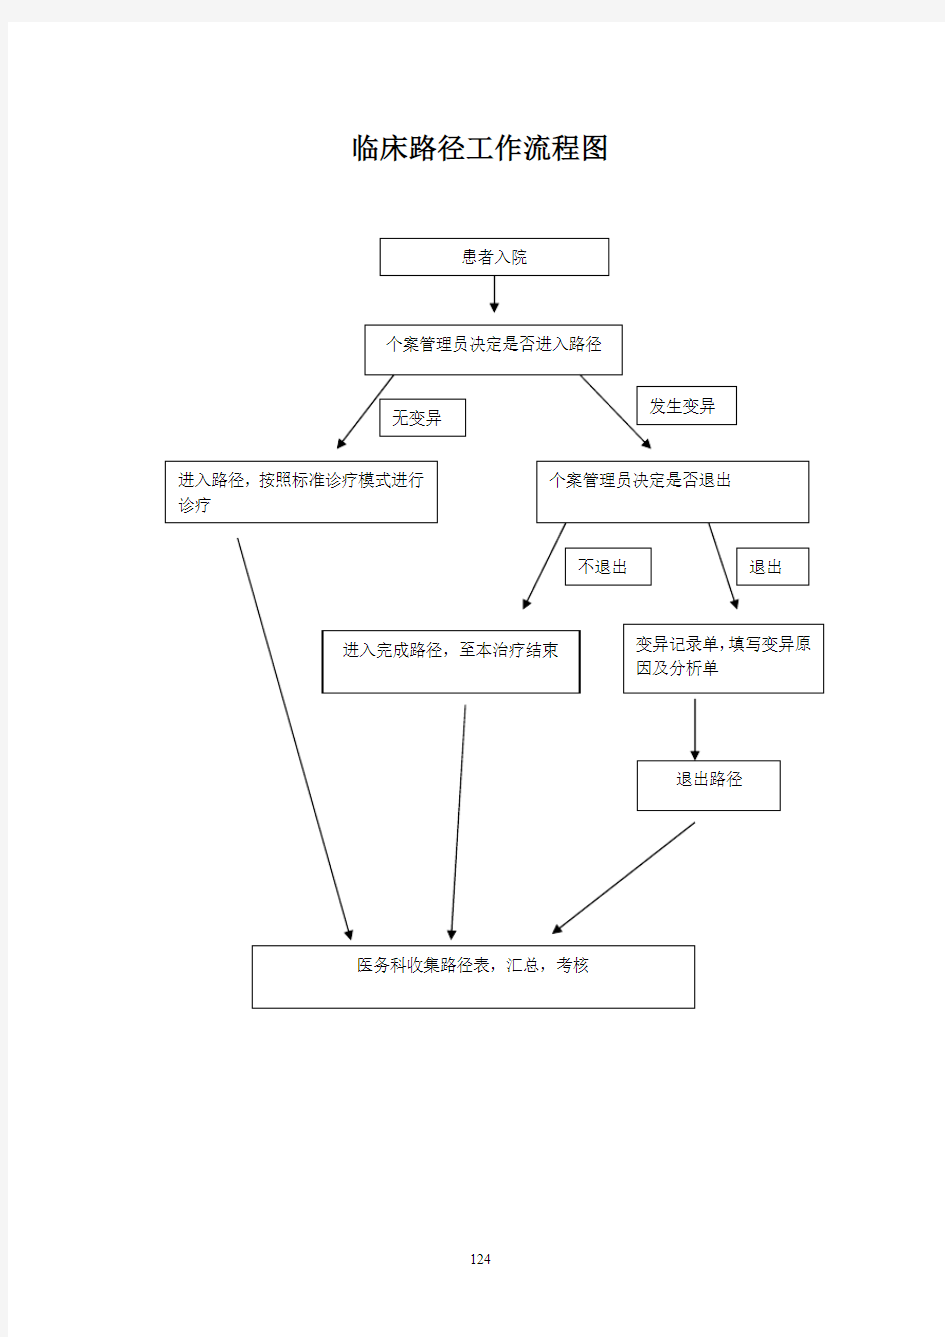 临床路径工作流程图